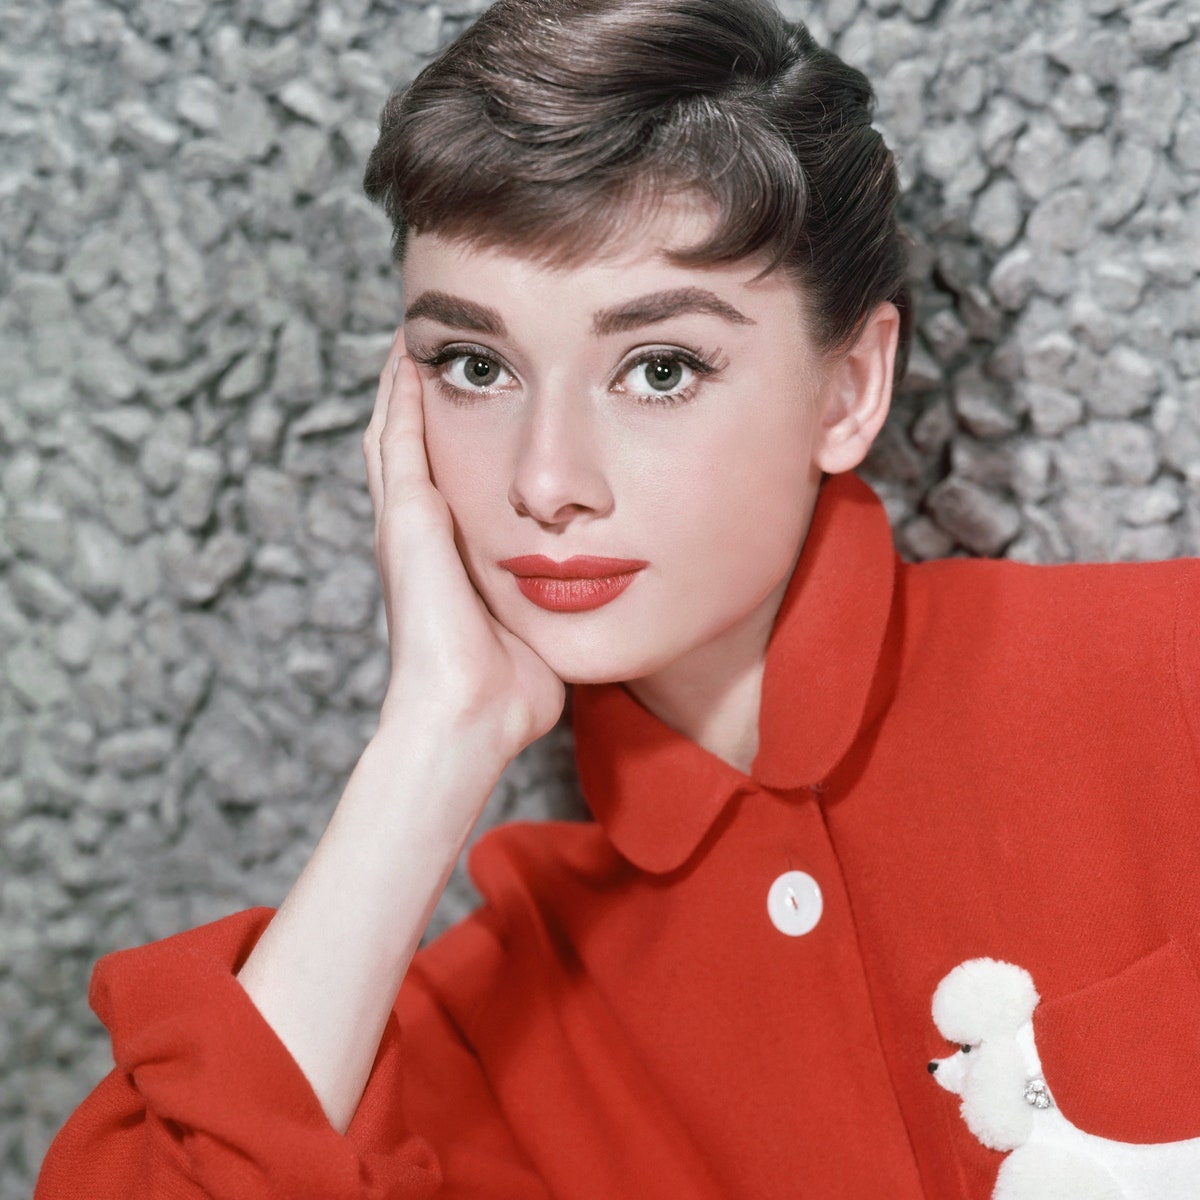 CIRCA 1957  Actress Audrey Hepburn poses for a publicity still circa 1957.